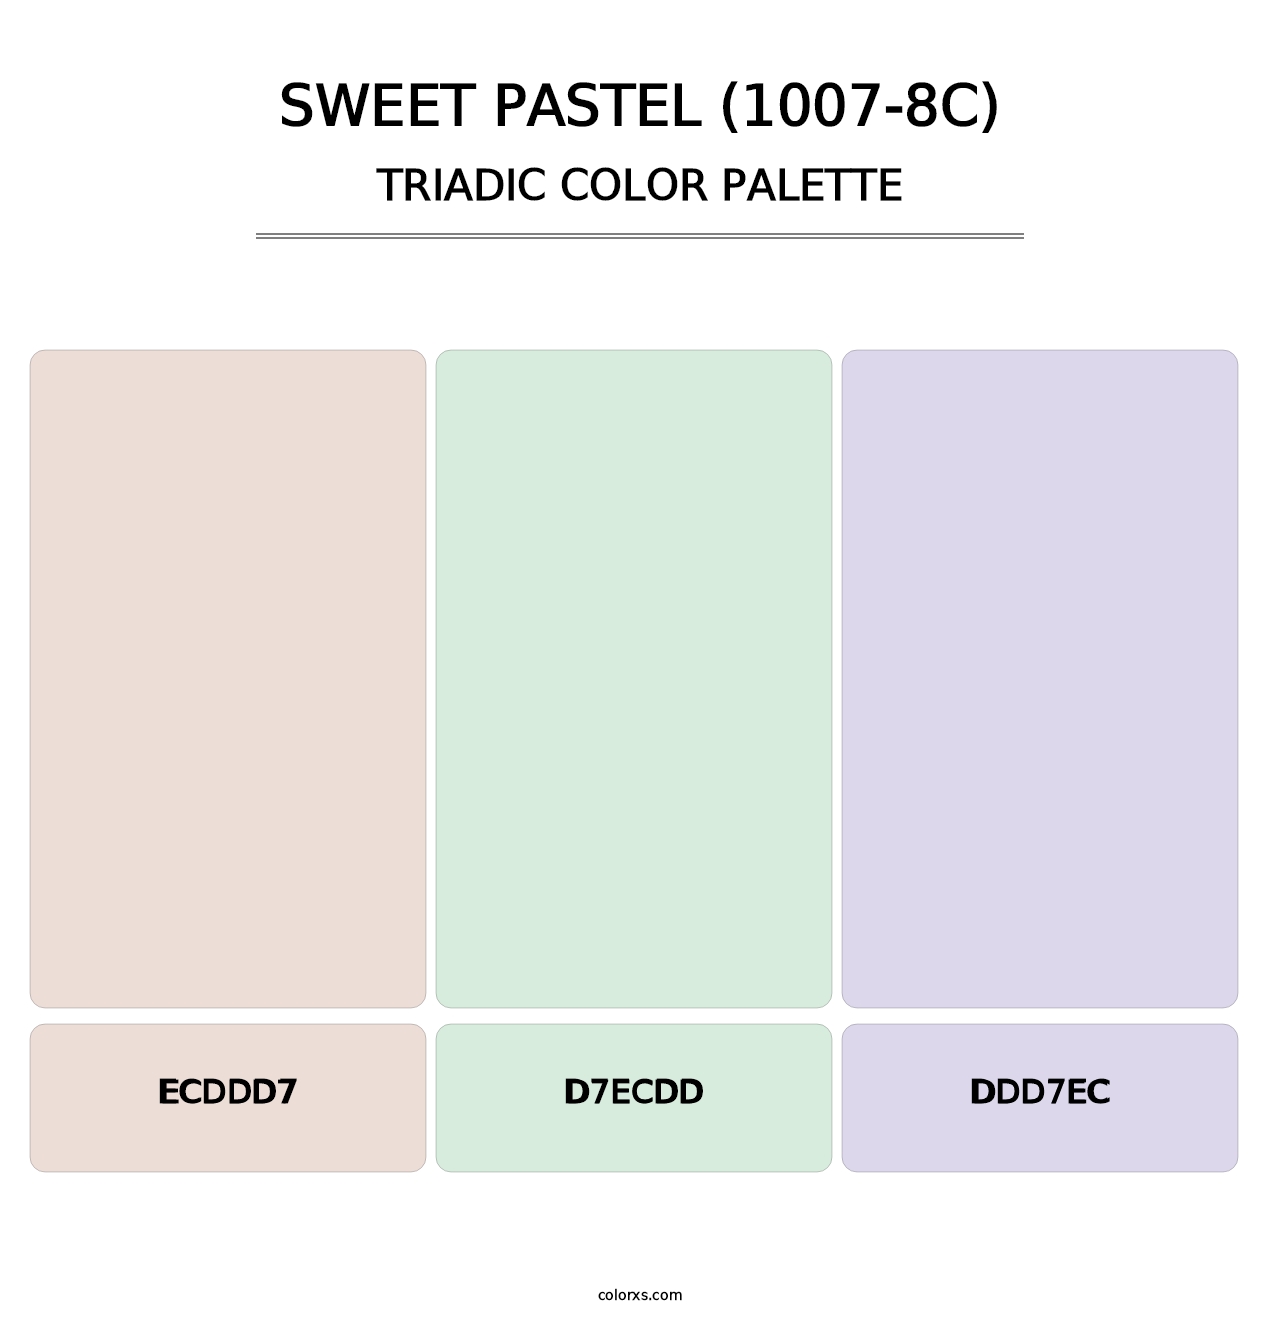 Sweet Pastel (1007-8C) - Triadic Color Palette